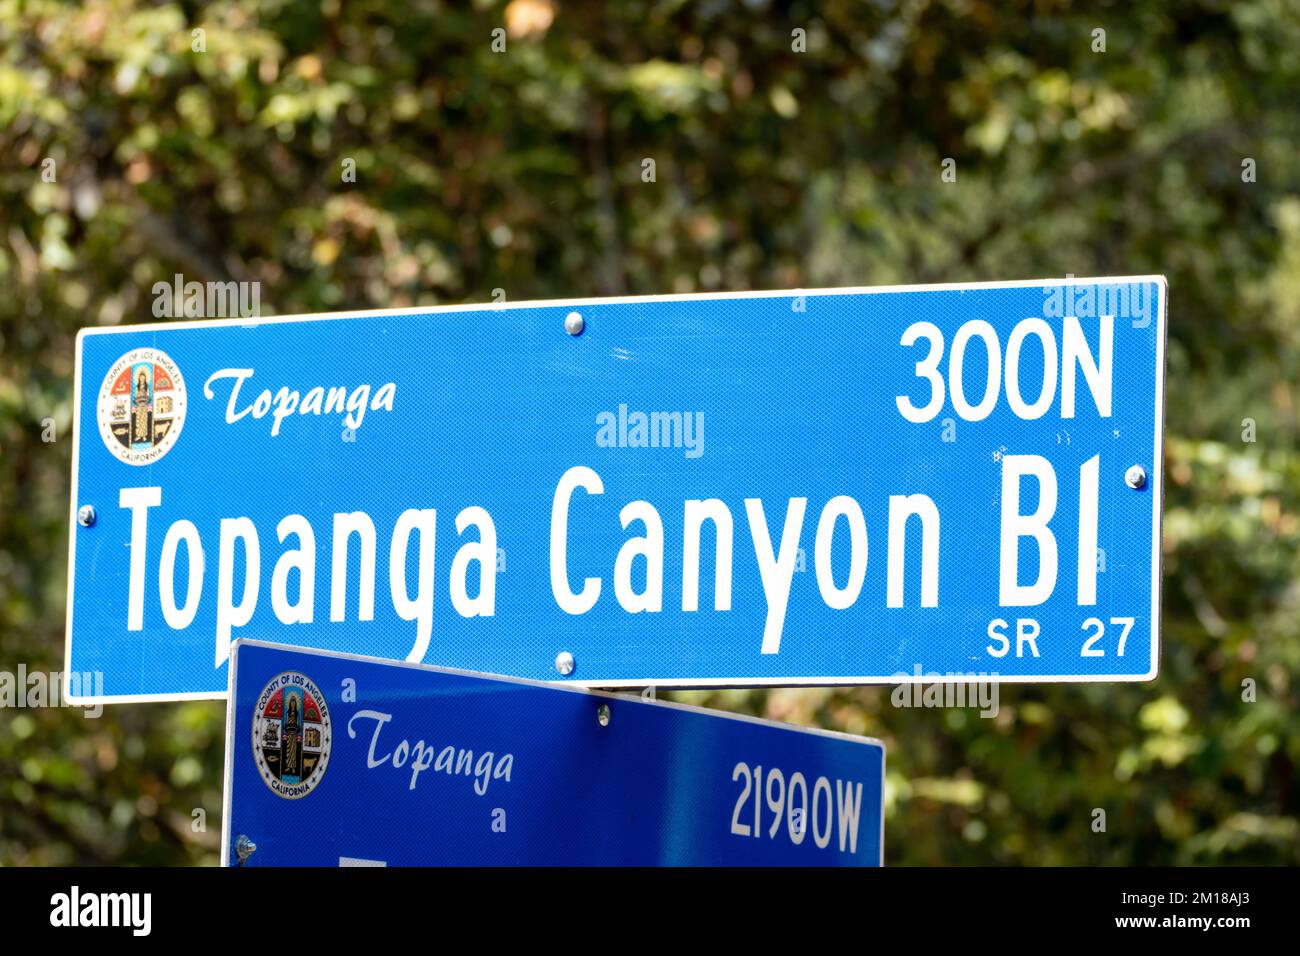 Topanga canyon boulevard hi-res stock photography and images - Alamy